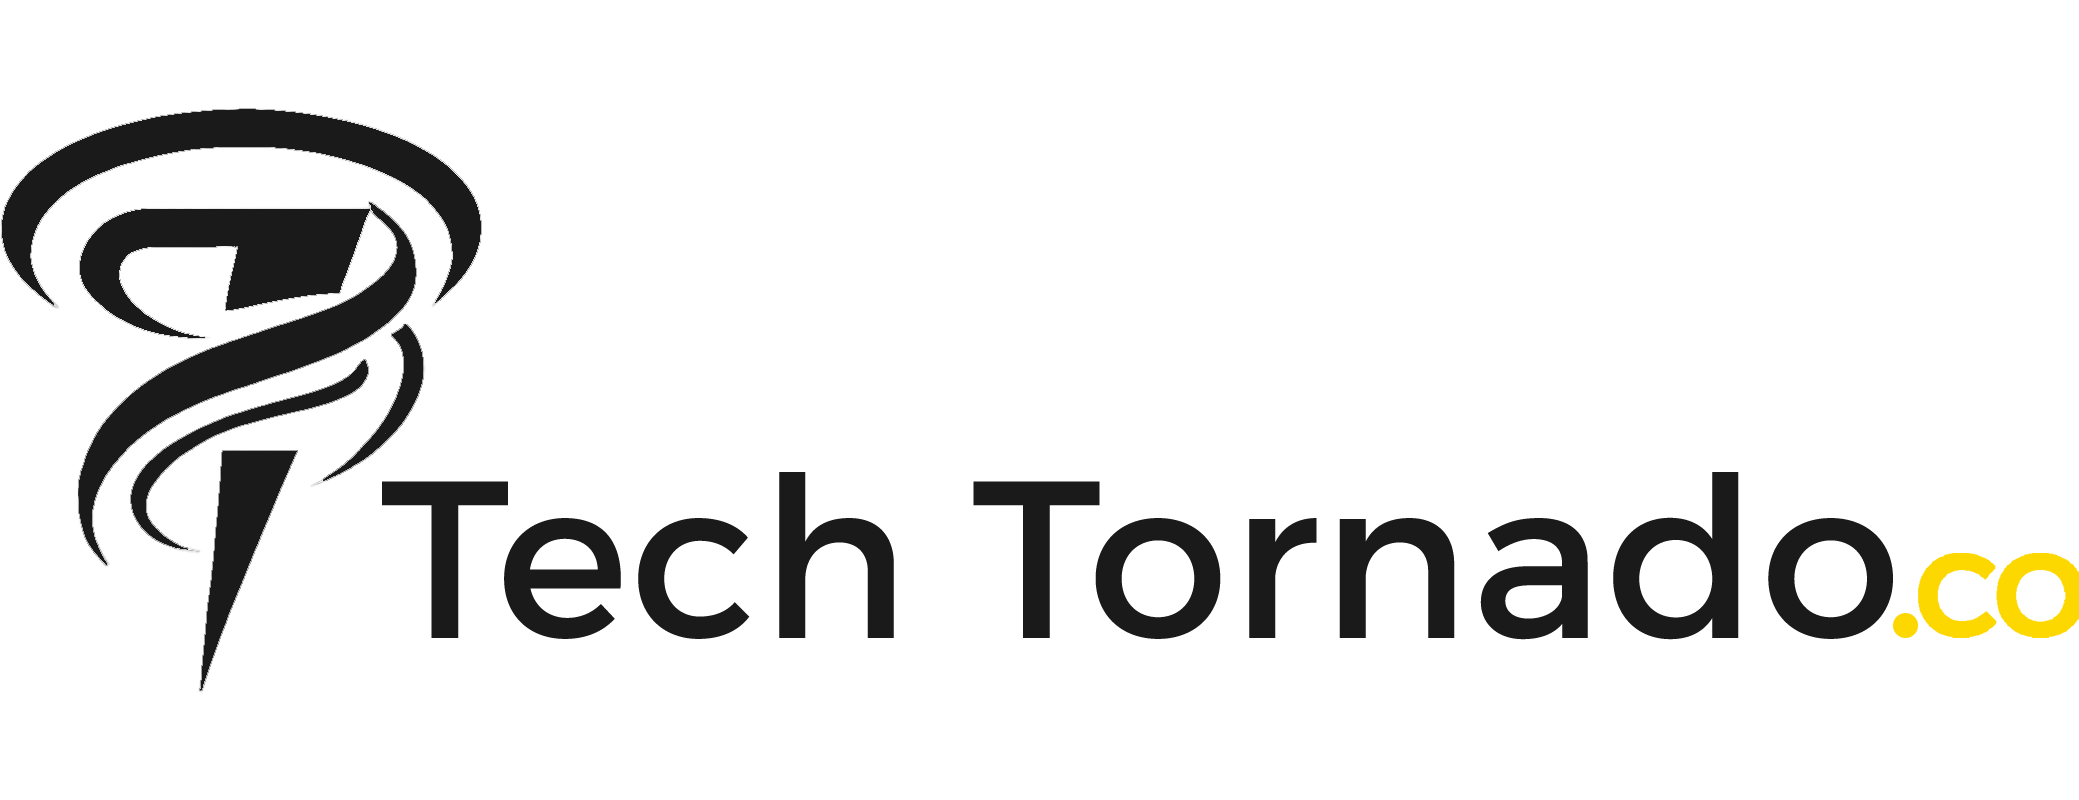 Tech Tornado